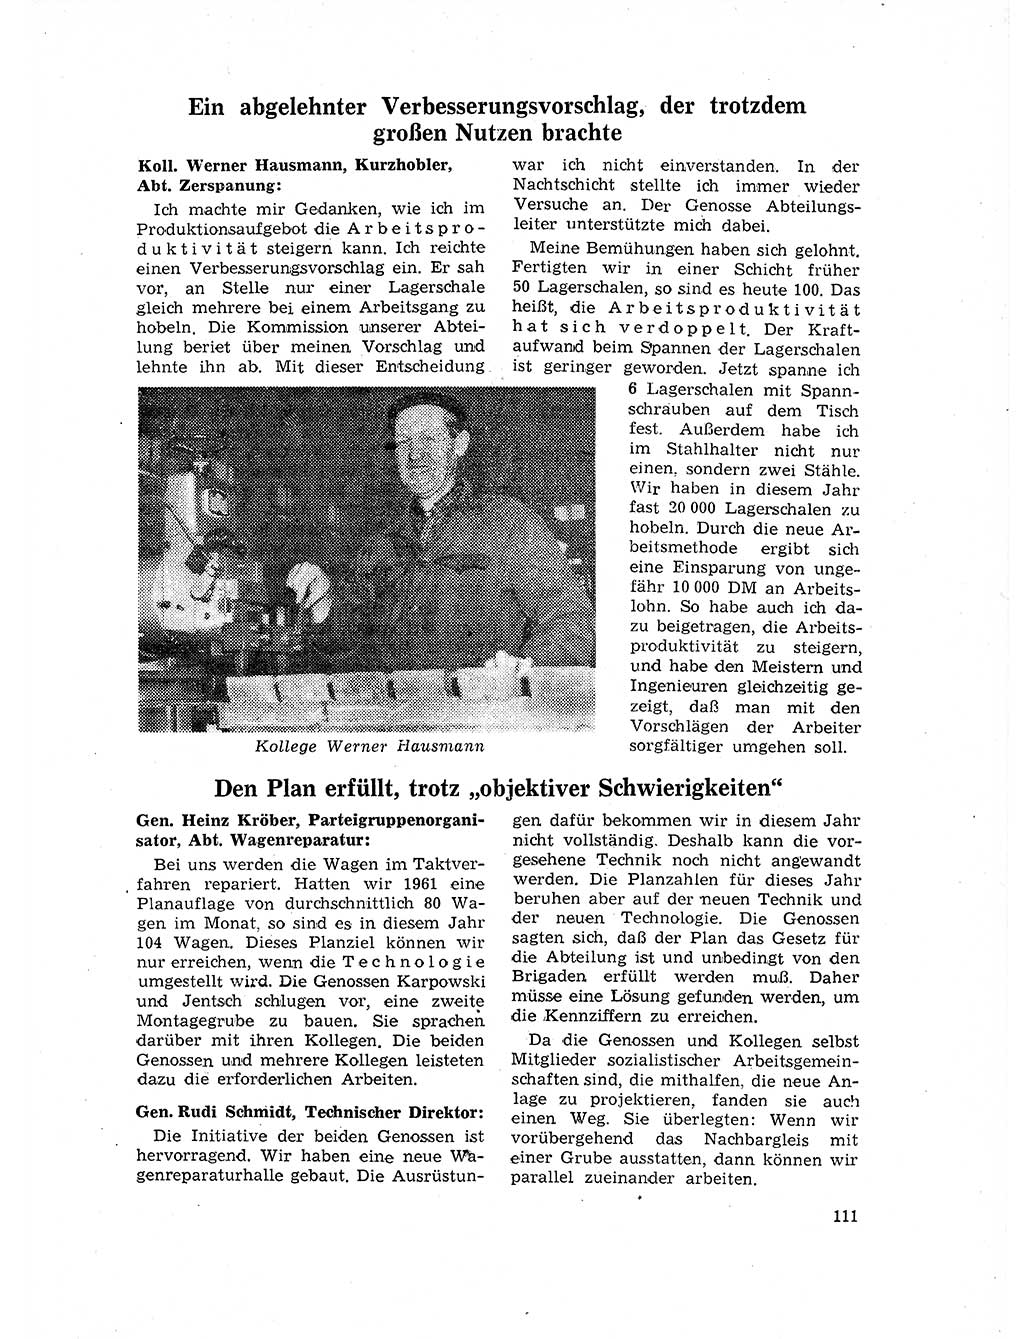 Neuer Weg (NW), Organ des Zentralkomitees (ZK) der SED (Sozialistische Einheitspartei Deutschlands) für Fragen des Parteilebens, 17. Jahrgang [Deutsche Demokratische Republik (DDR)] 1962, Seite 111 (NW ZK SED DDR 1962, S. 111)